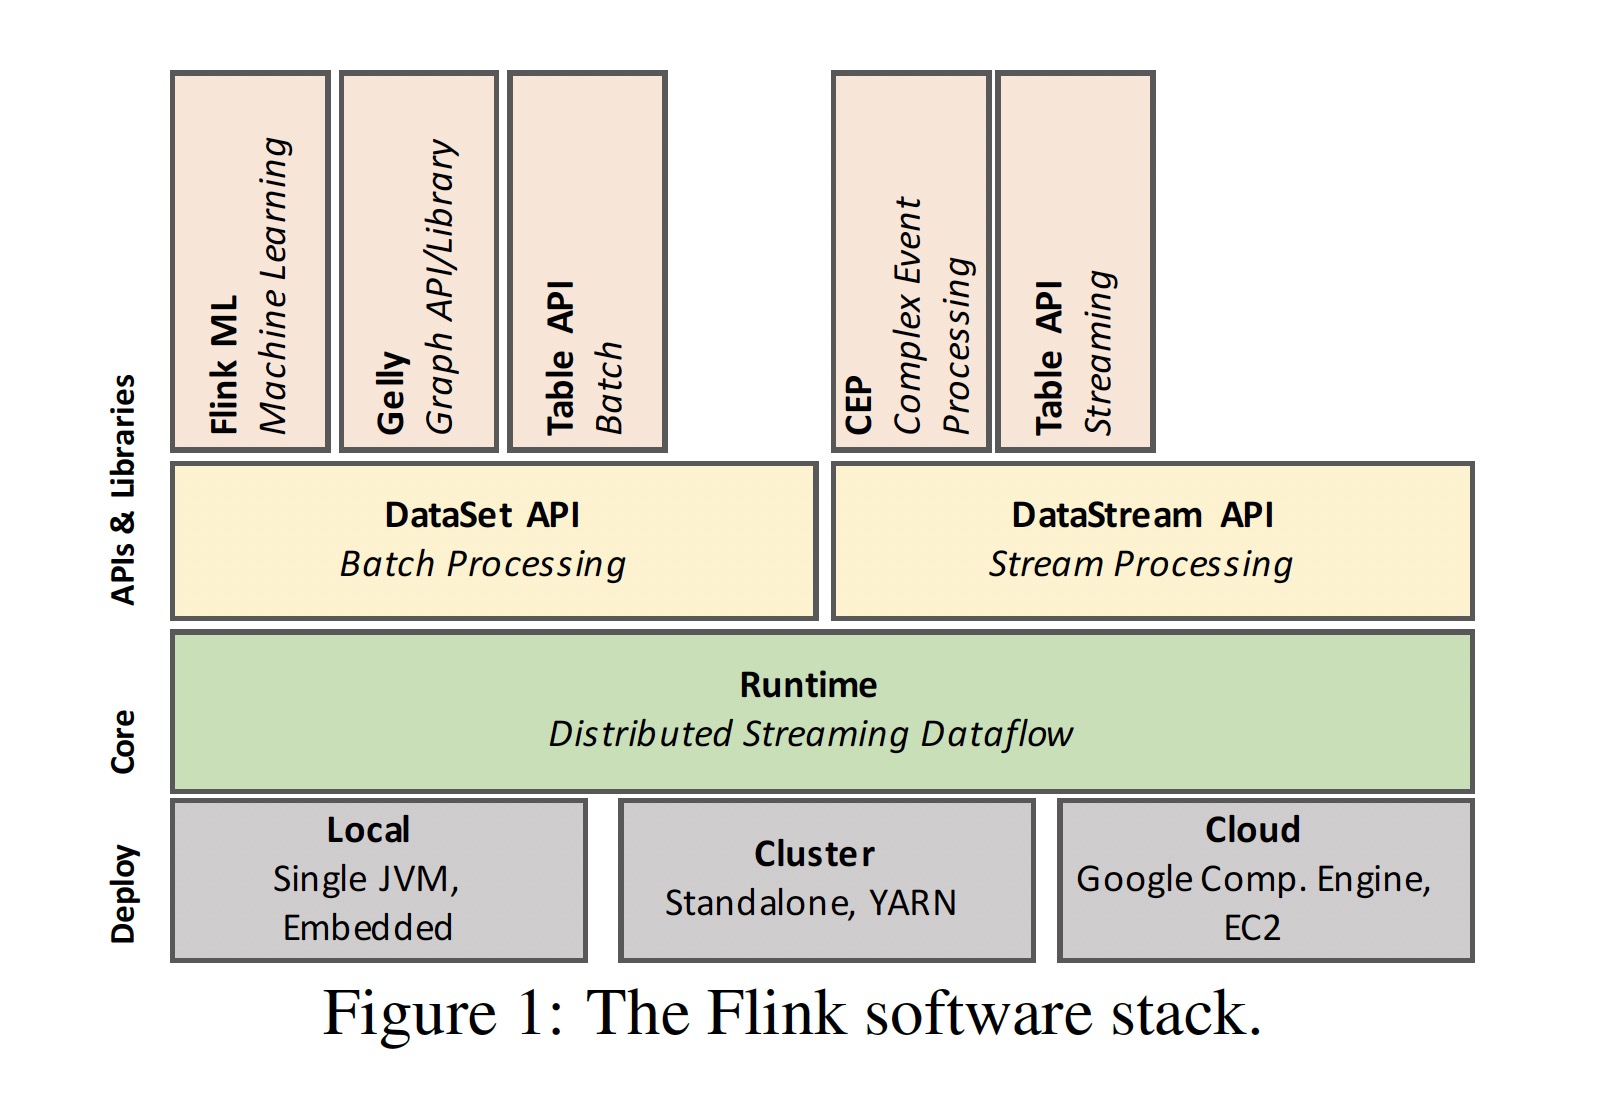 Flink software stack